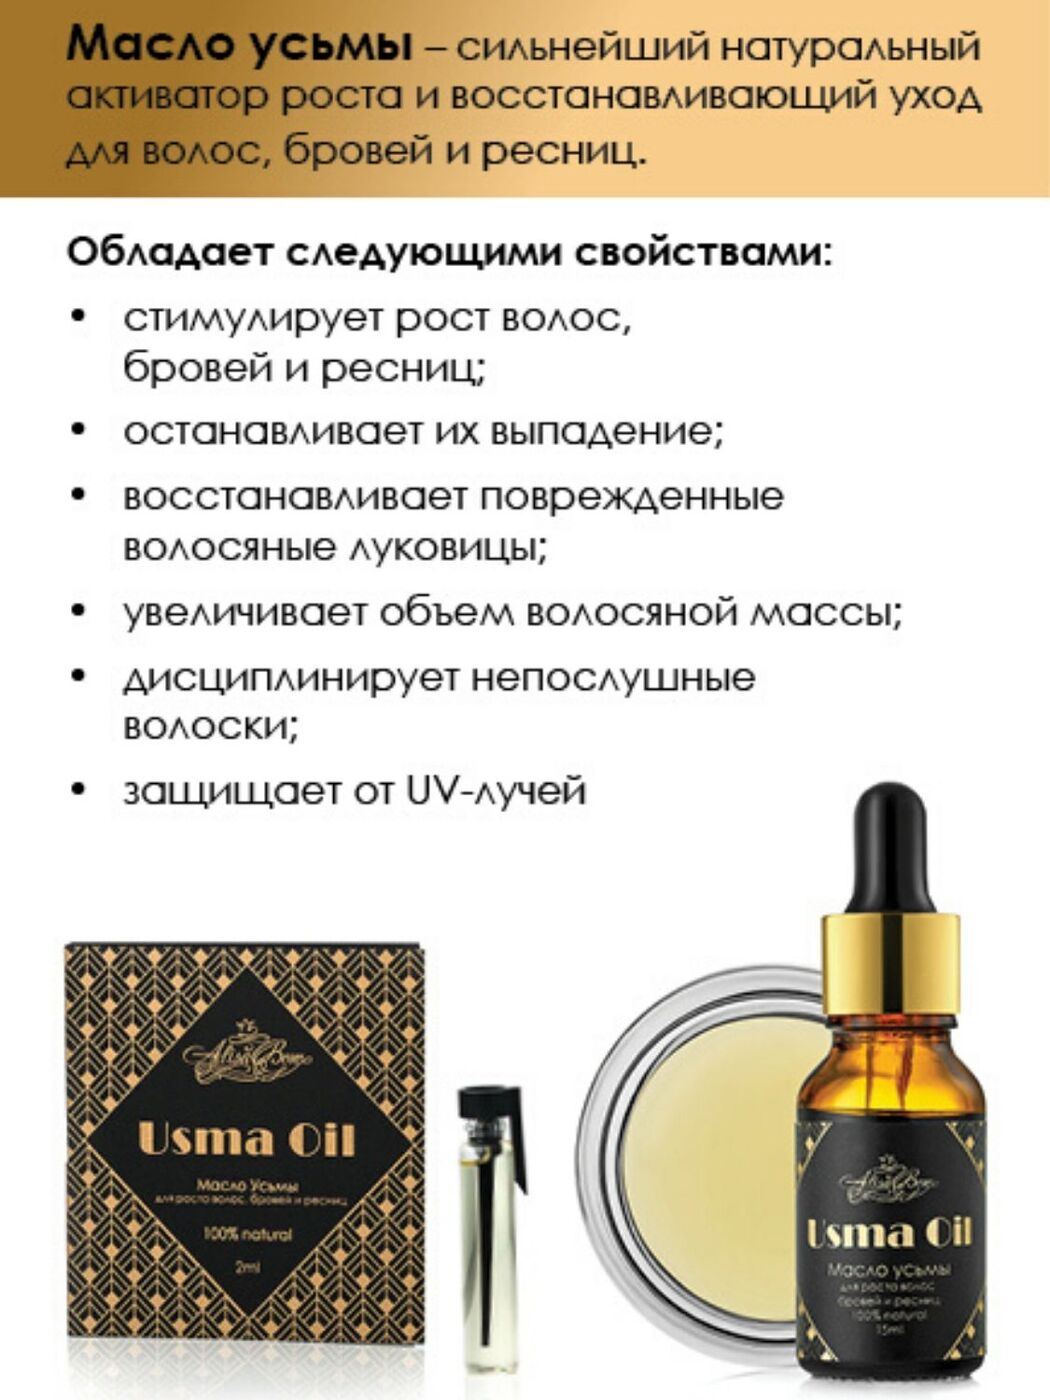 Alisa bon масло усьмы для роста волос, бровей и ресниц USMA Oil, 15 мл